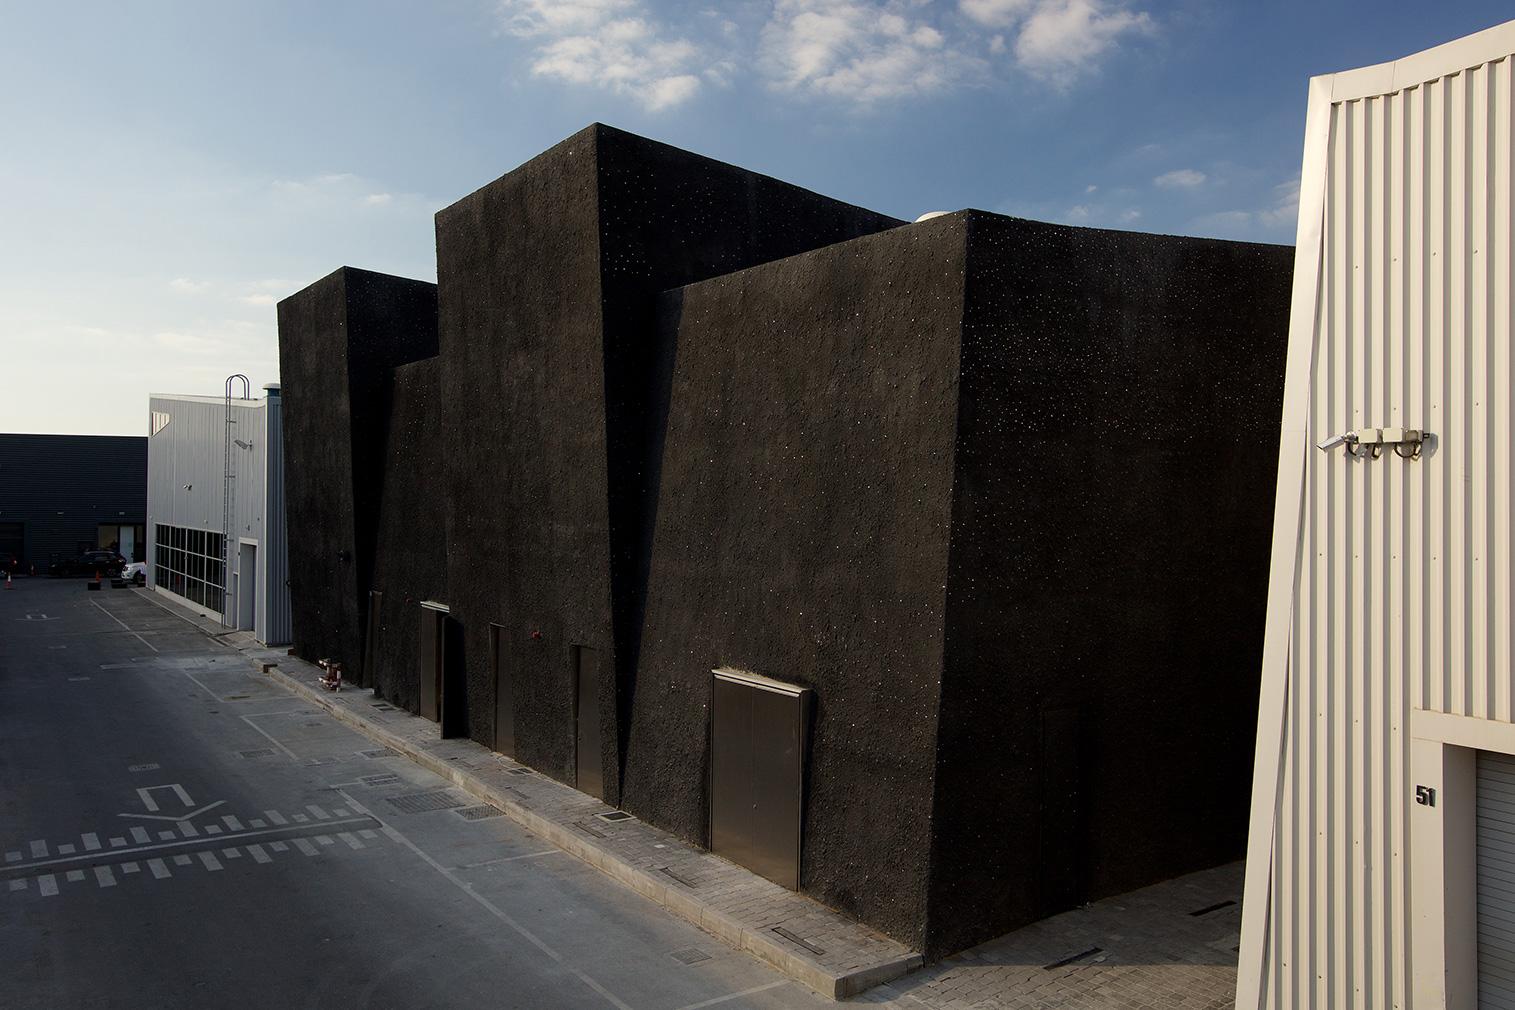 Concrete cultural space by OMA on Dubai's Alserkal Avenue